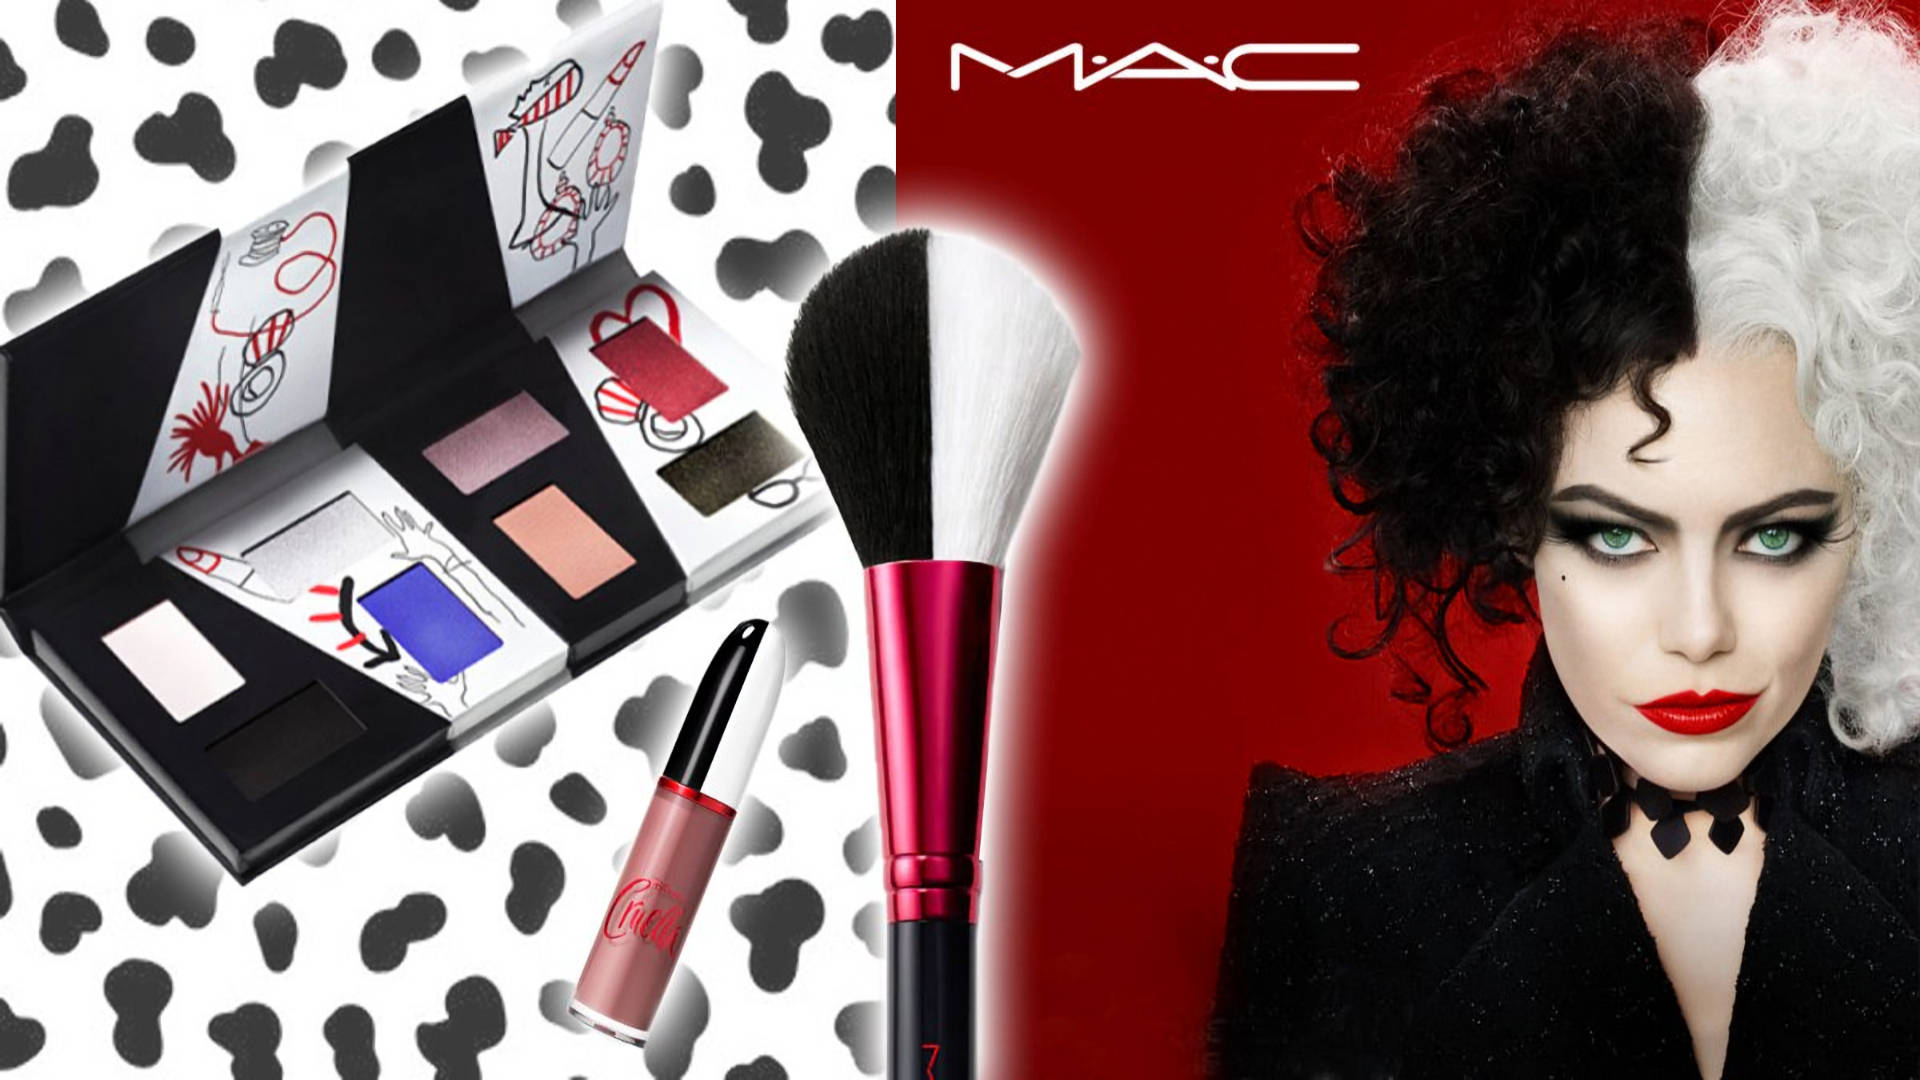 Download Mac Cosmetics Cruella Collection Wallpaper | Wallpapers.com